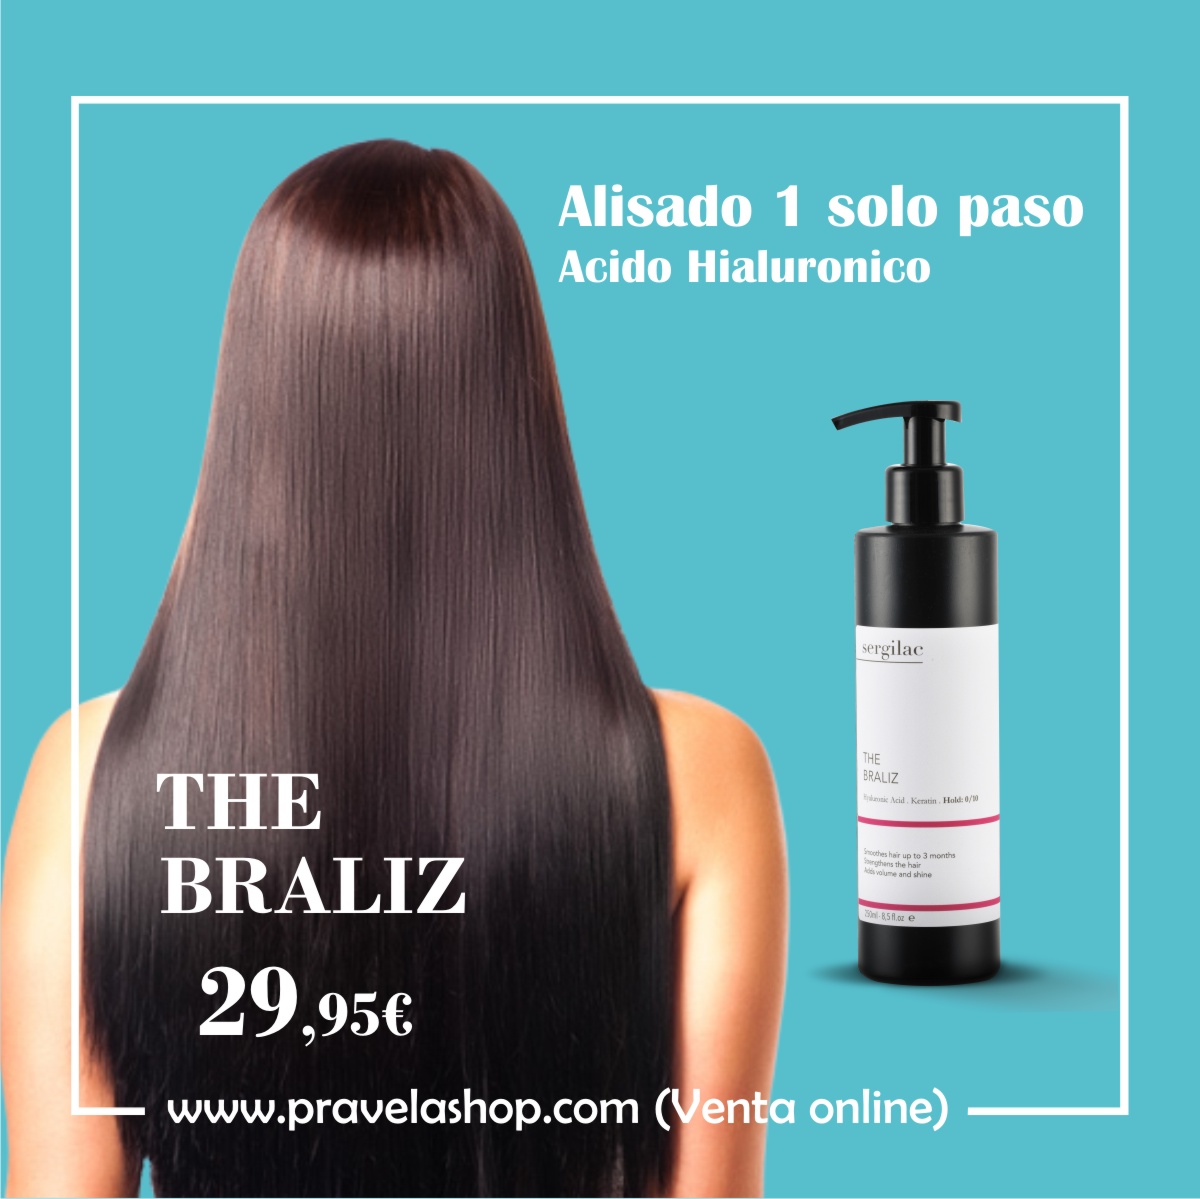 Alisado acido hialuronico y keratina | Para realizar en casa o peluqueria - The Braliz by Pravela Shop